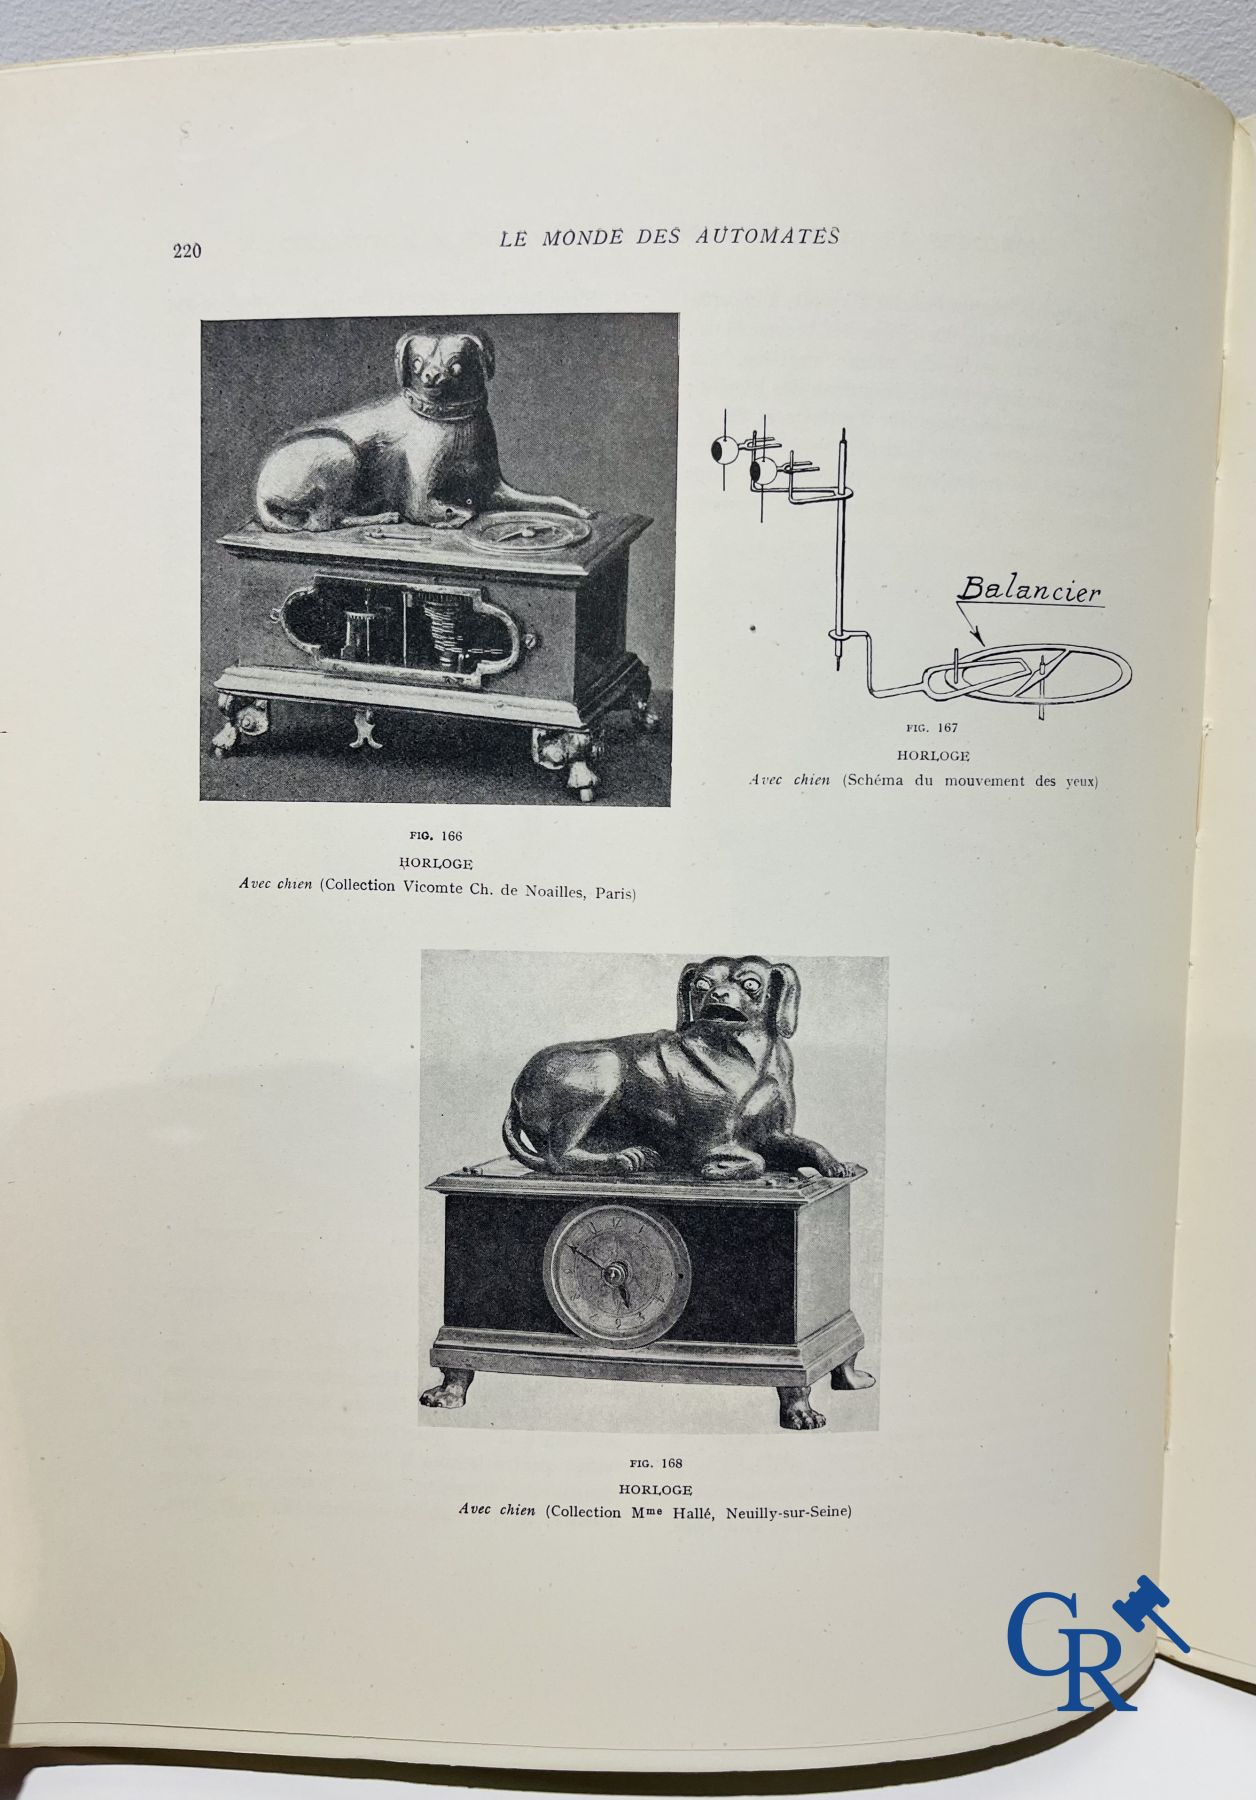 Automates. Rare edition of "Le monde des automates." Alfred Chapuis et Edouard Gélis. Paris 1928. - Image 16 of 26